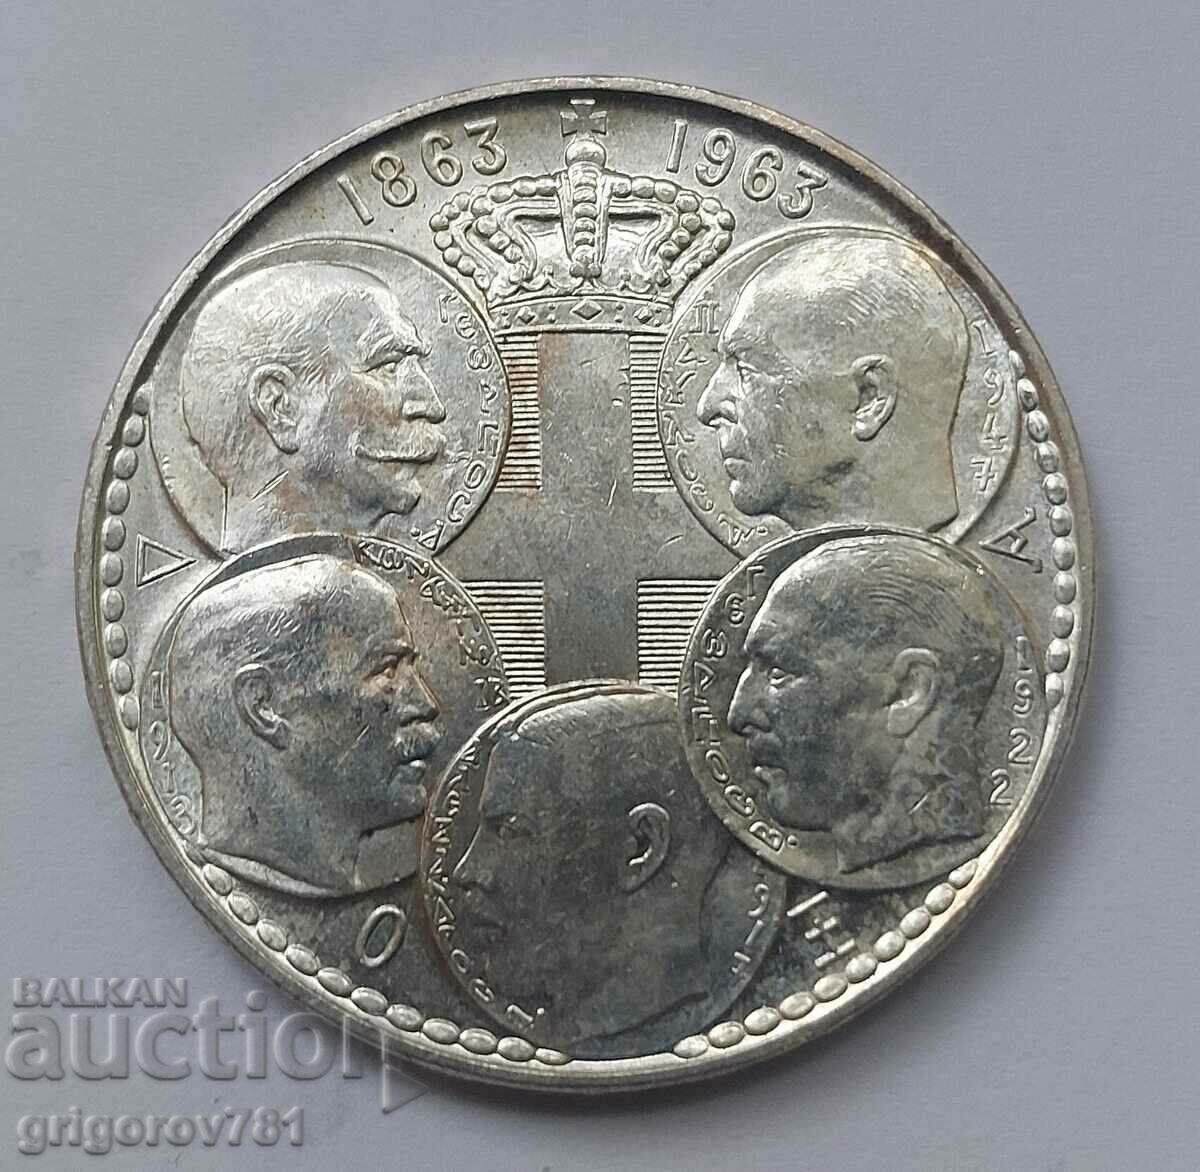 30 drahme de argint 1963 - Moneda de argint #1